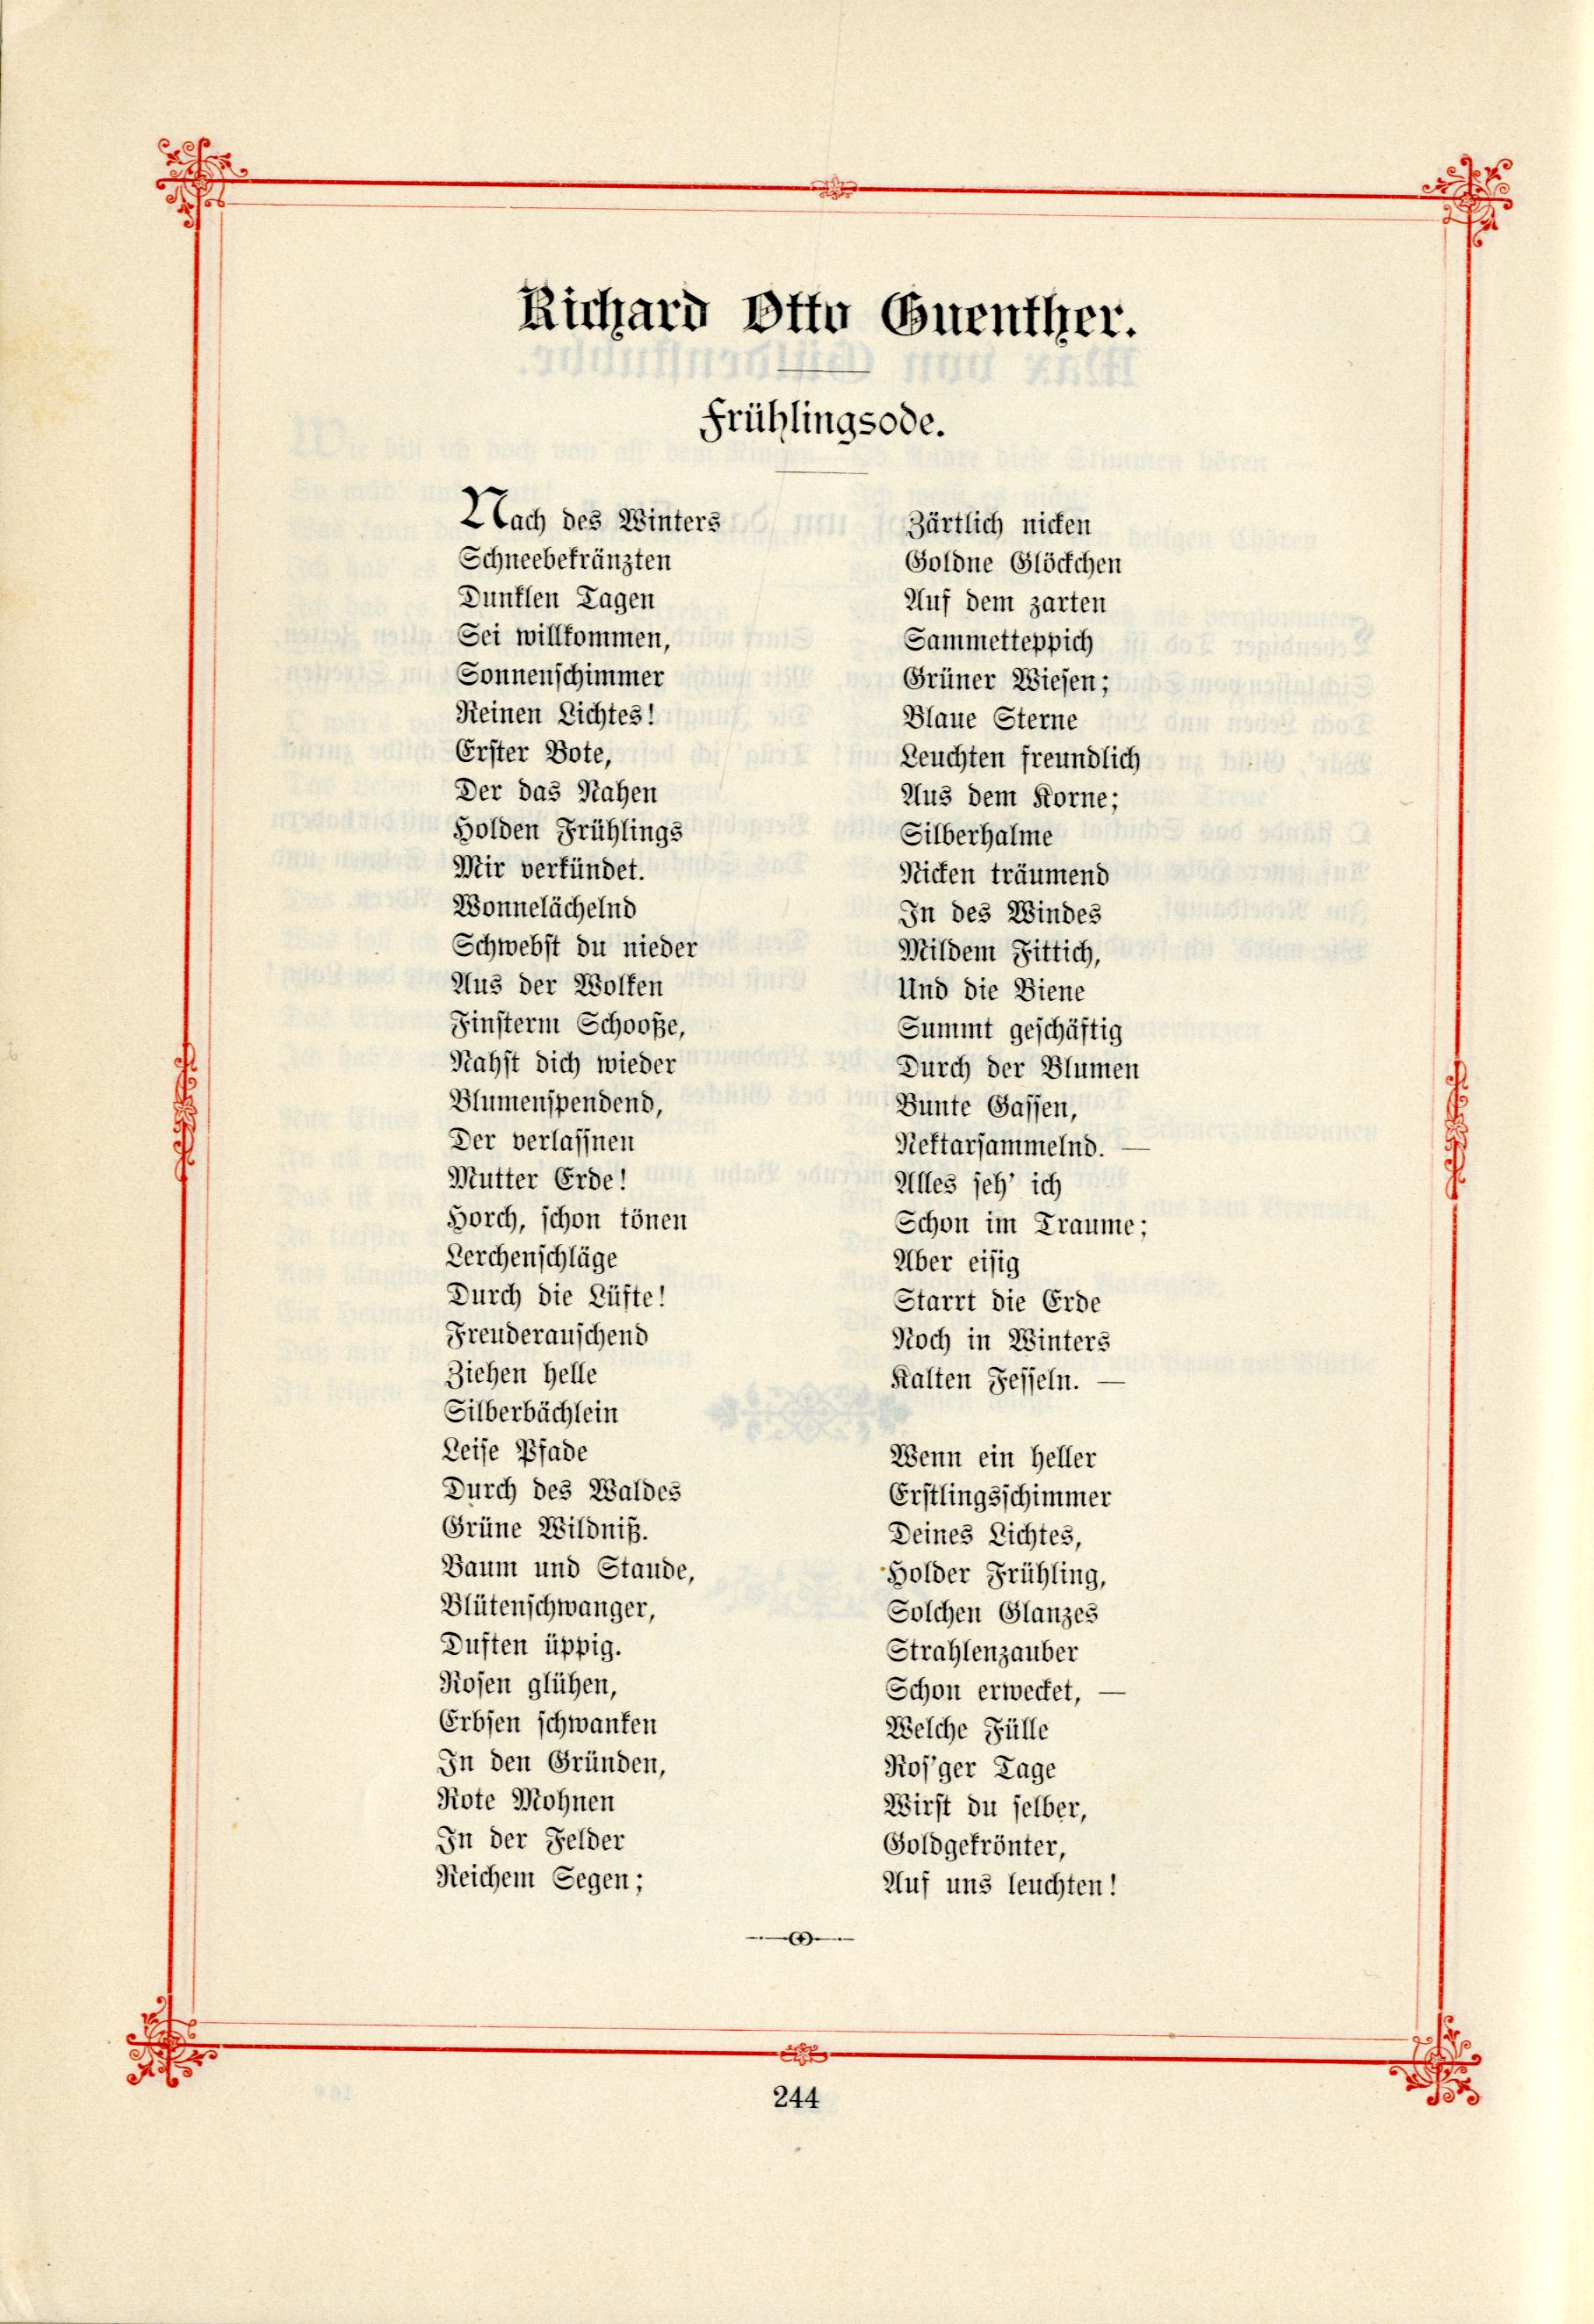 Das Baltische Dichterbuch (1895) | 290. (244) Main body of text